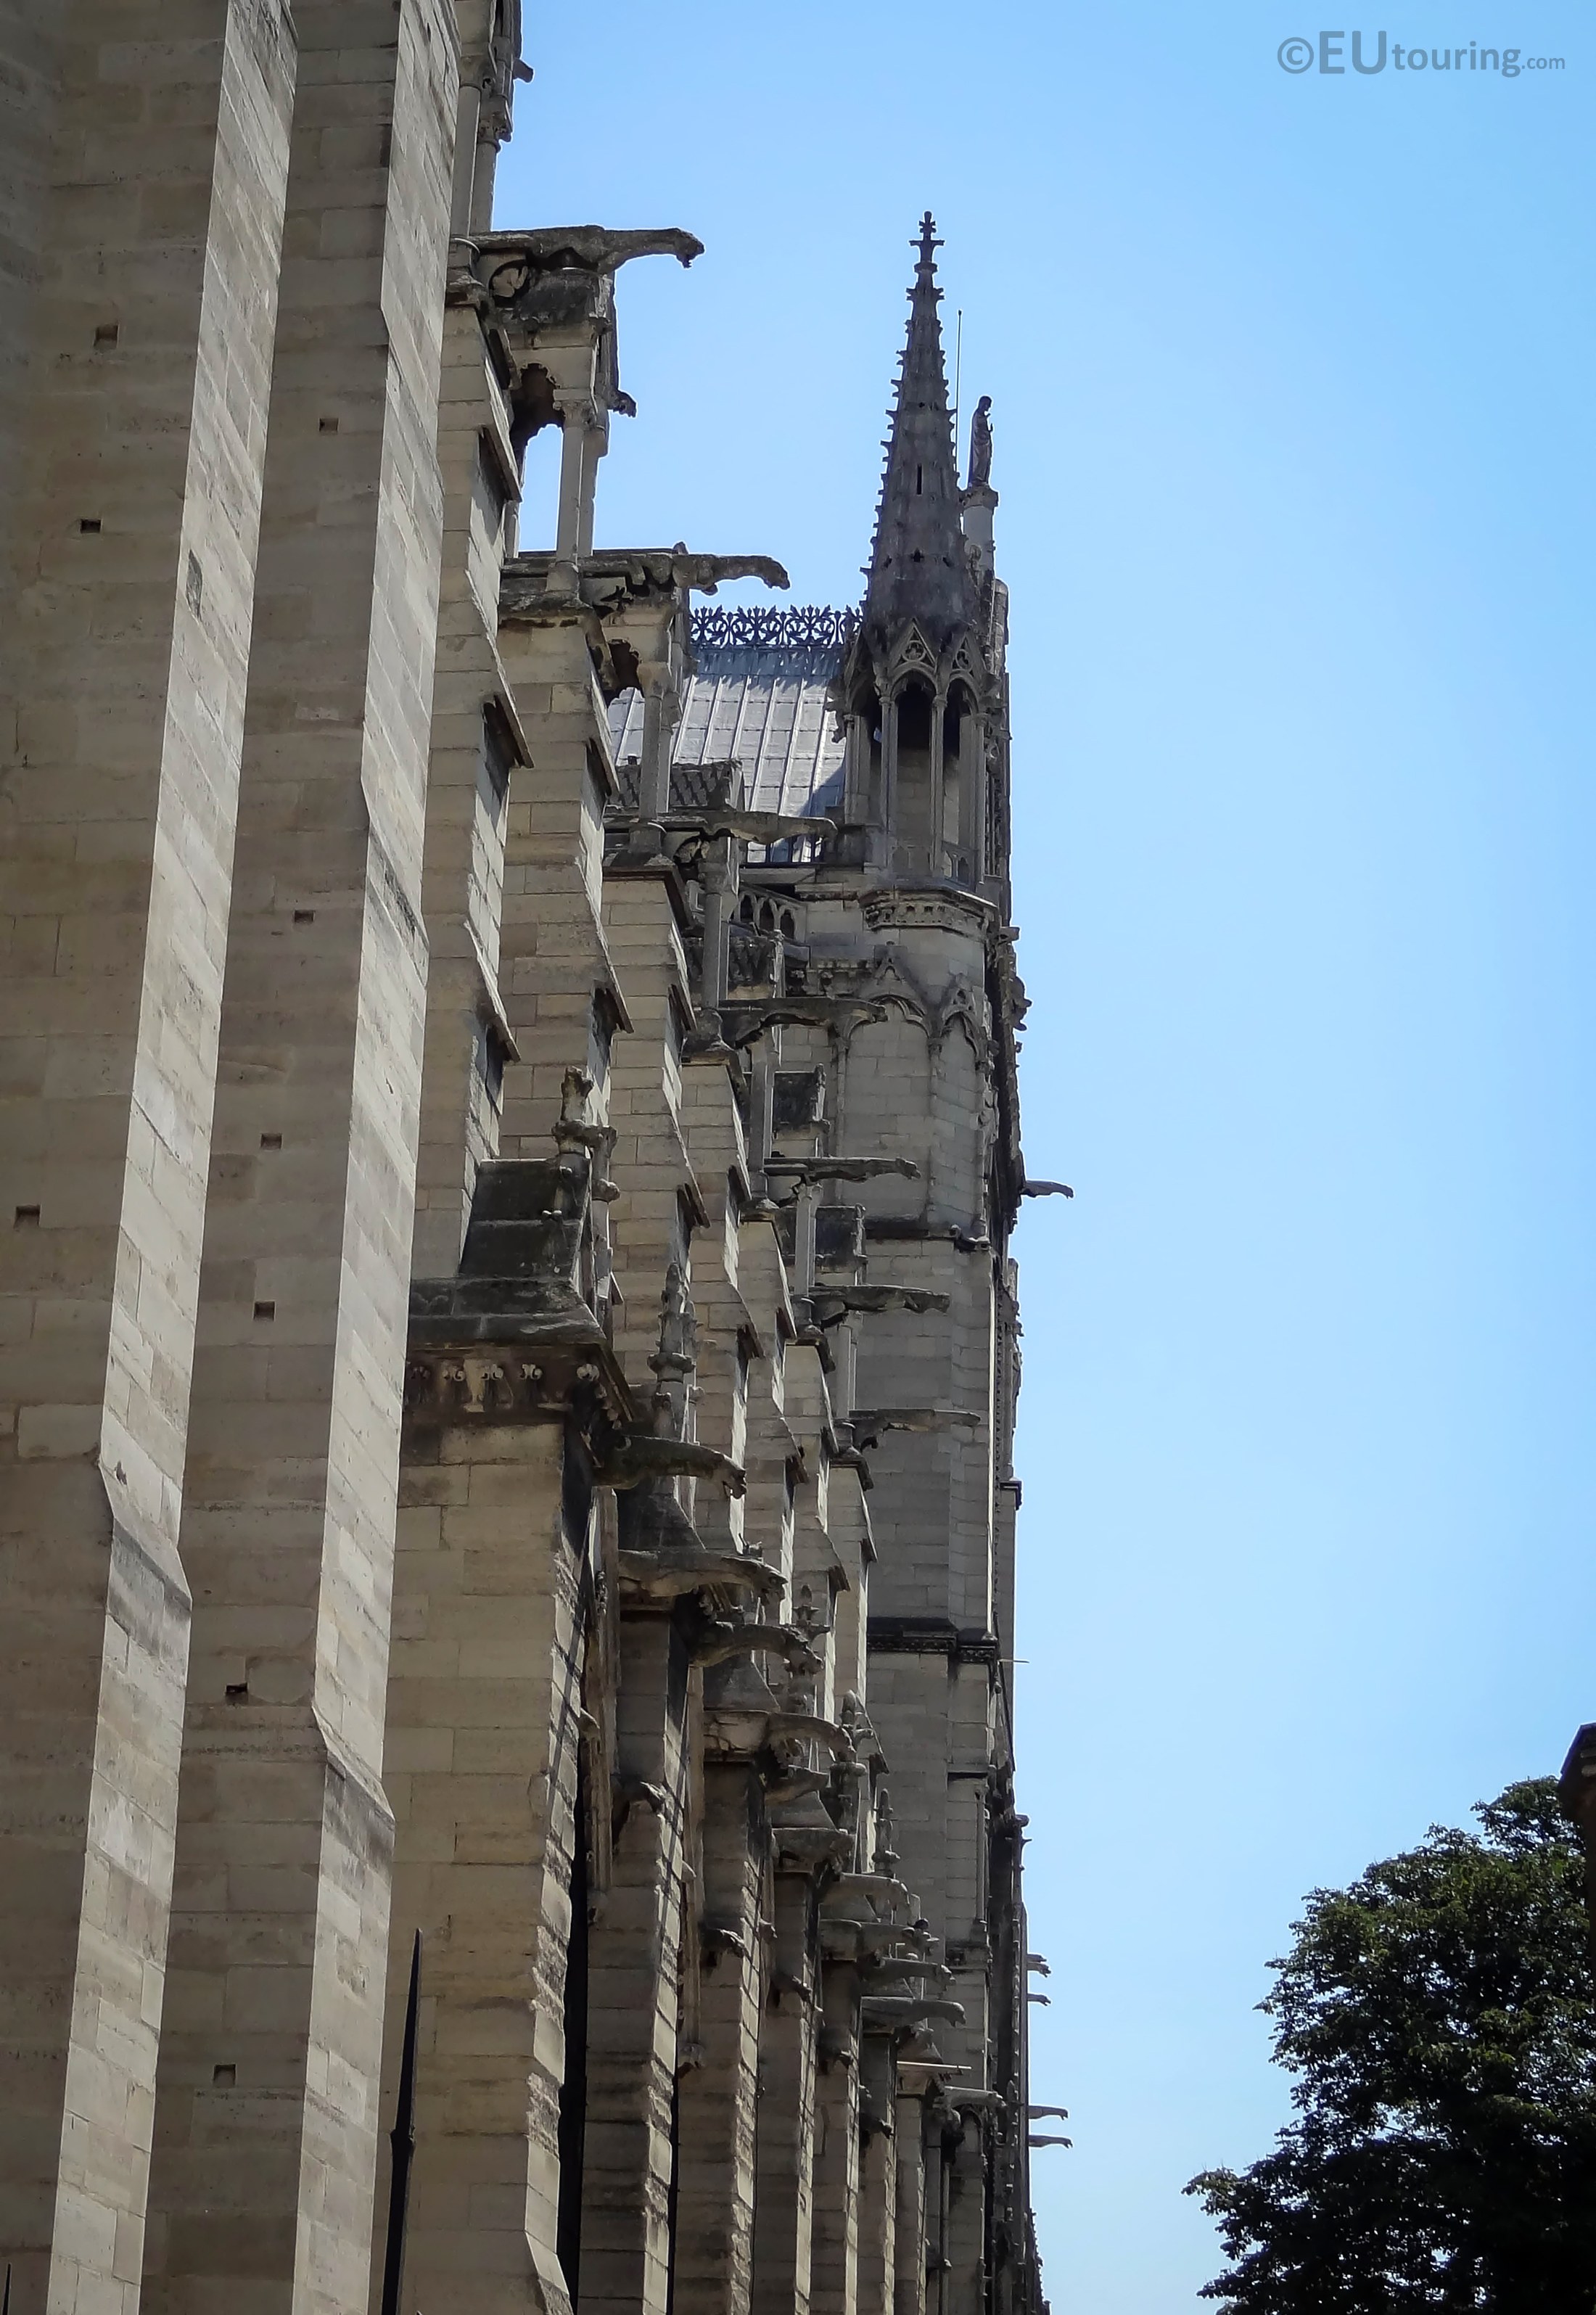 Gargoyles along the Notre Dame